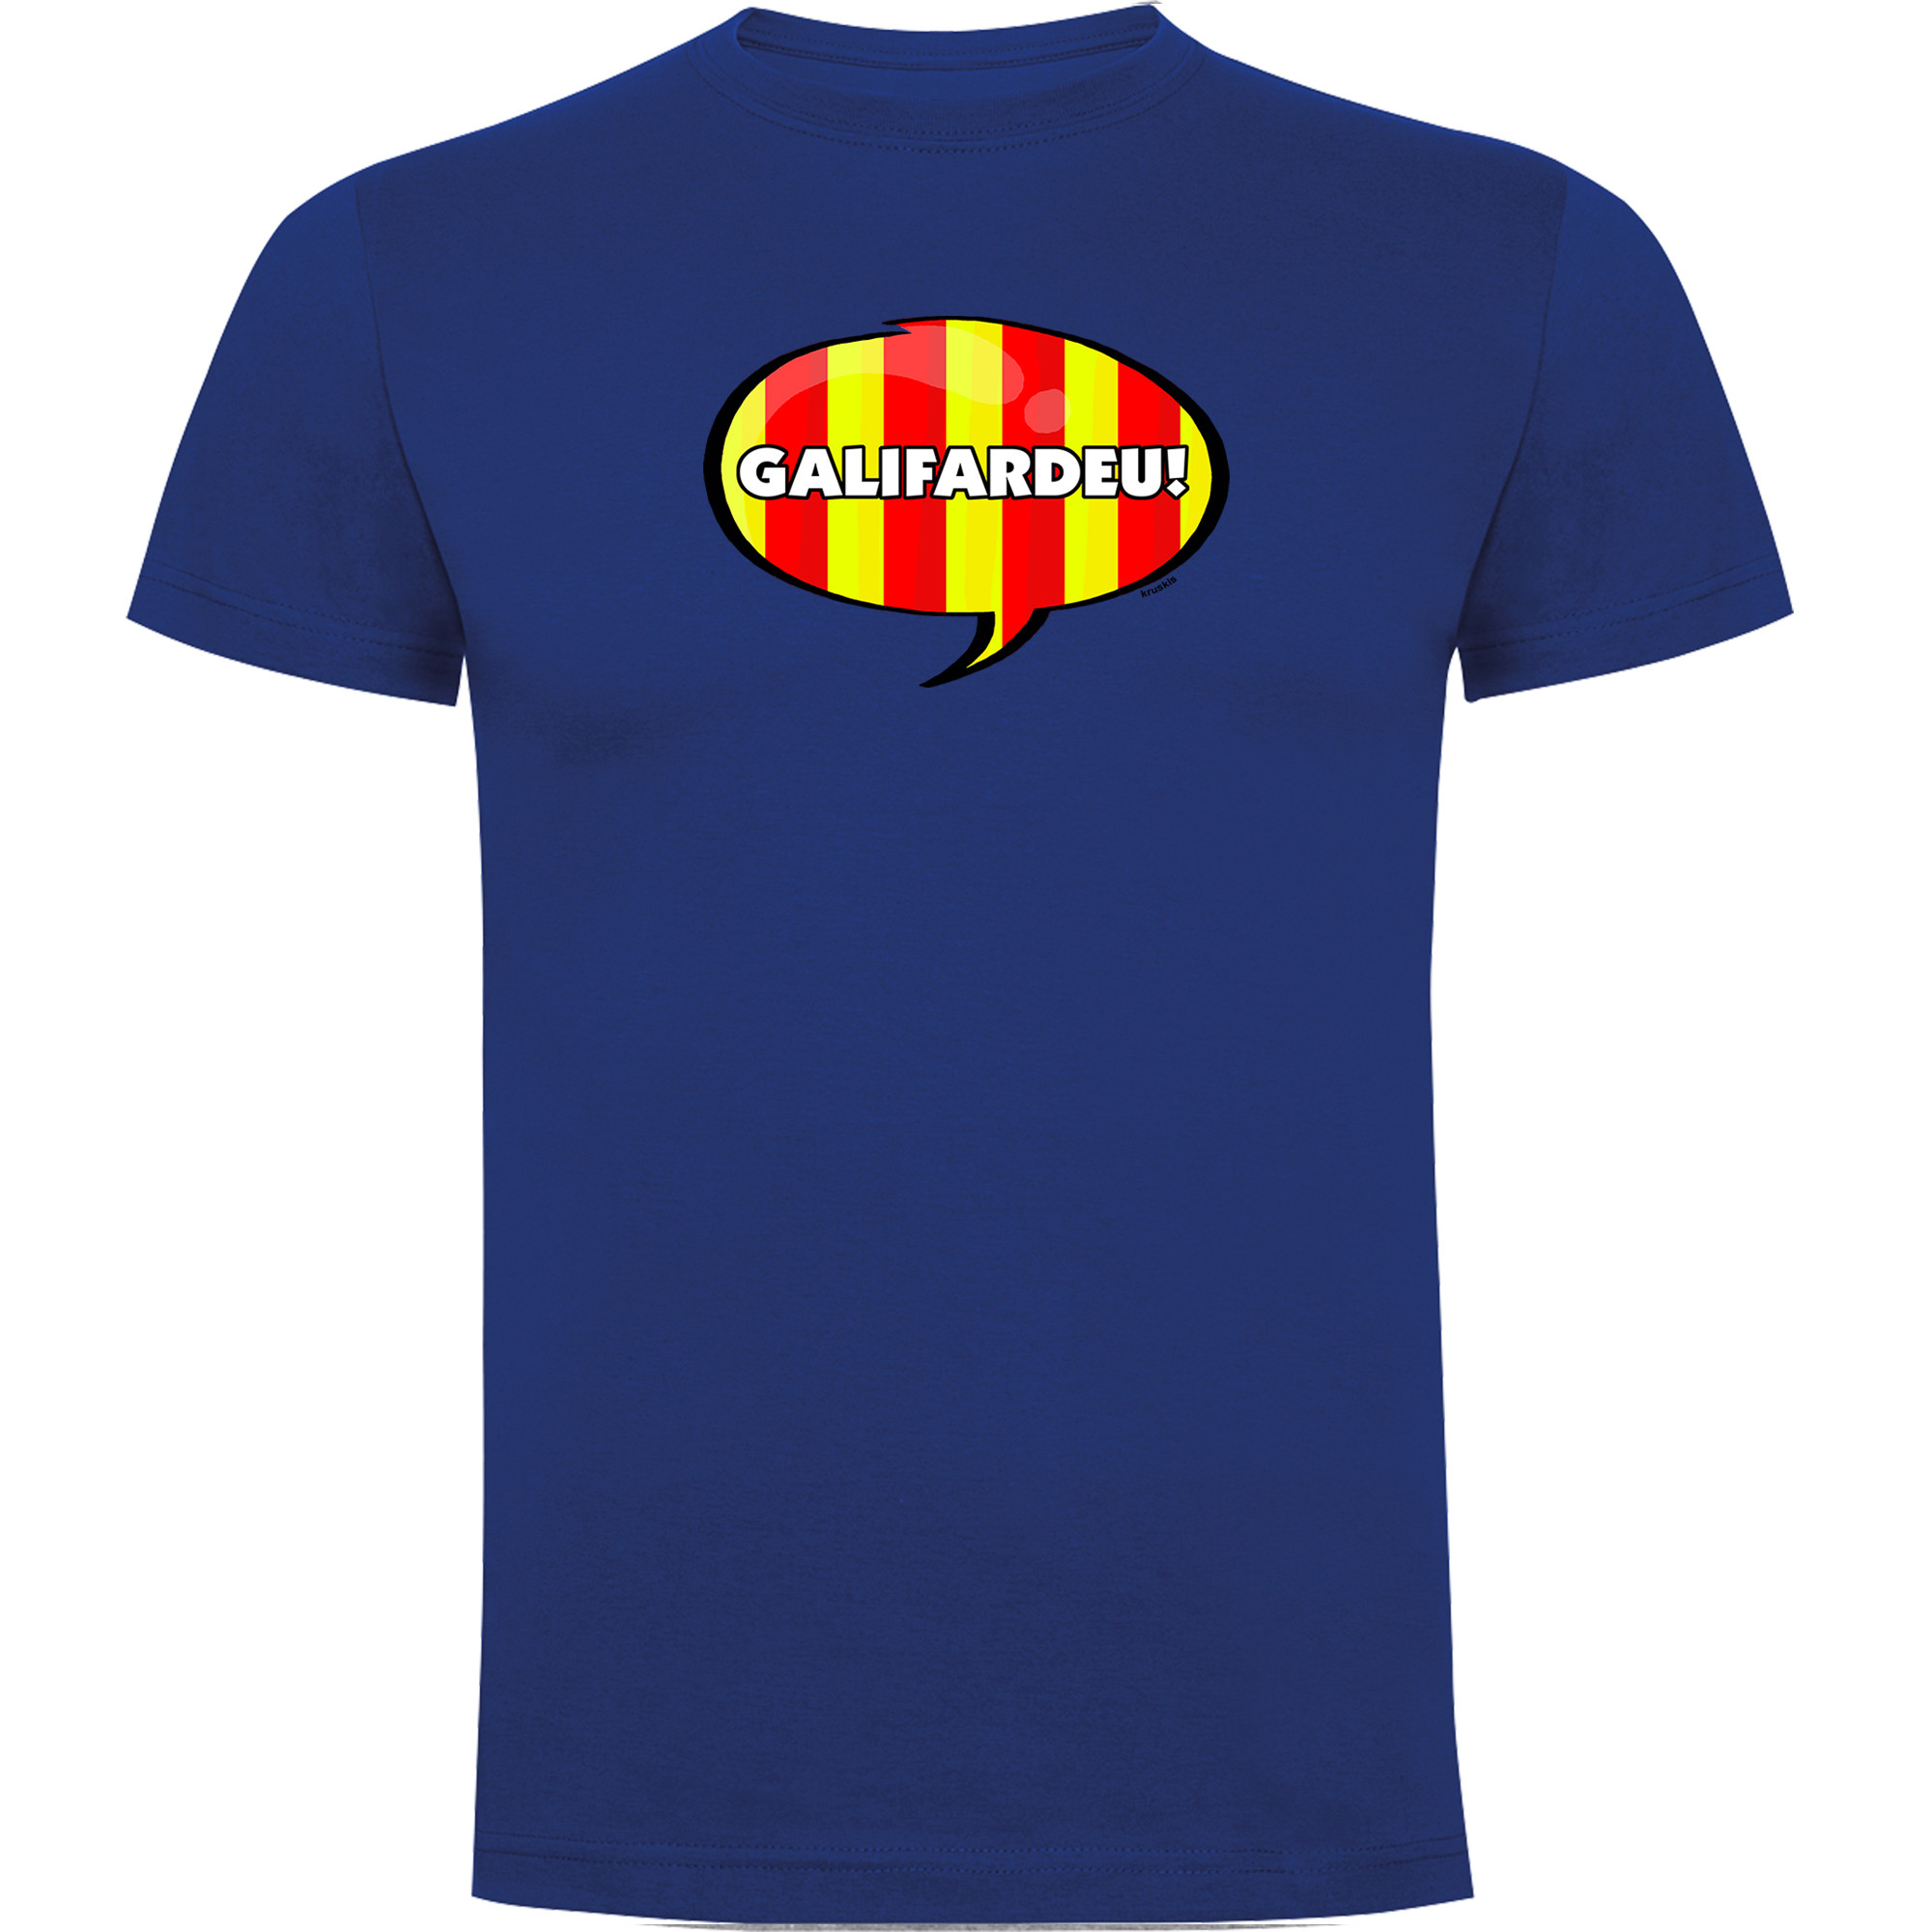 T Shirt Catalogna Galifardeu Manica Corta Uomo